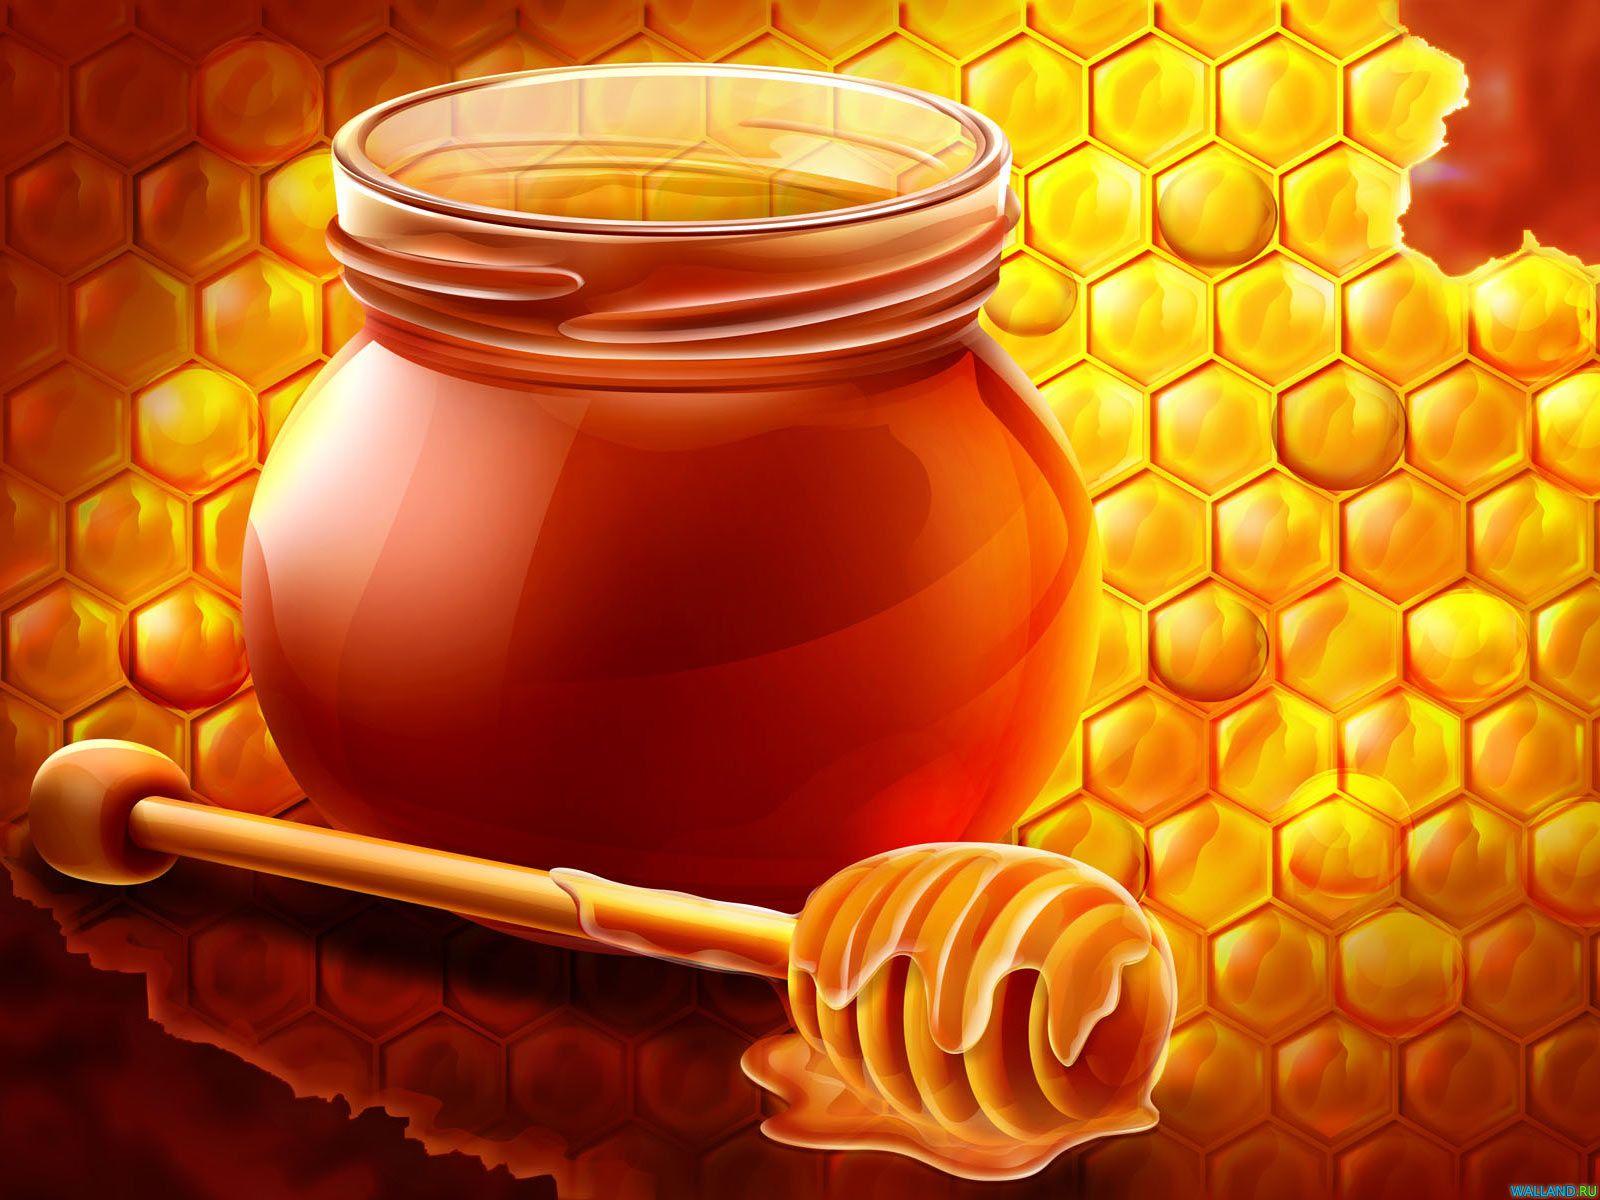 Honey Wallpaper Image